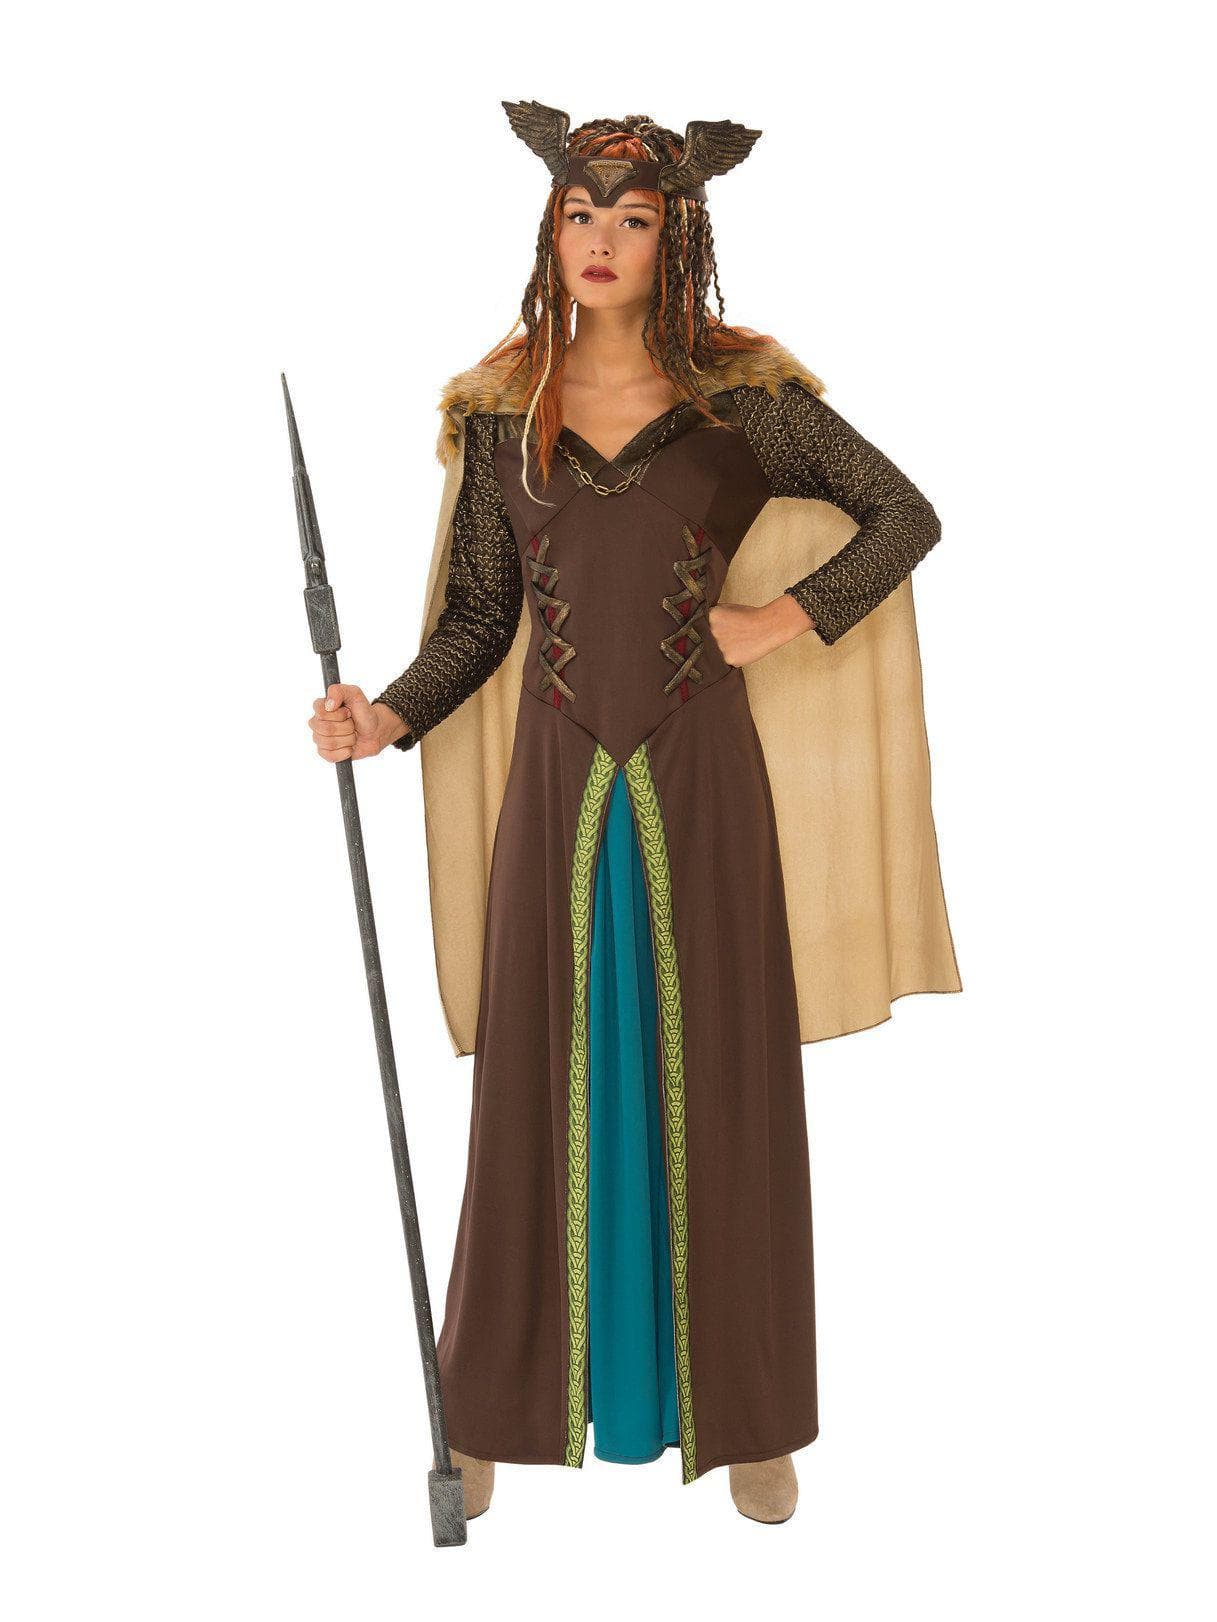 Adult Viking Woman Costume - costumes.com